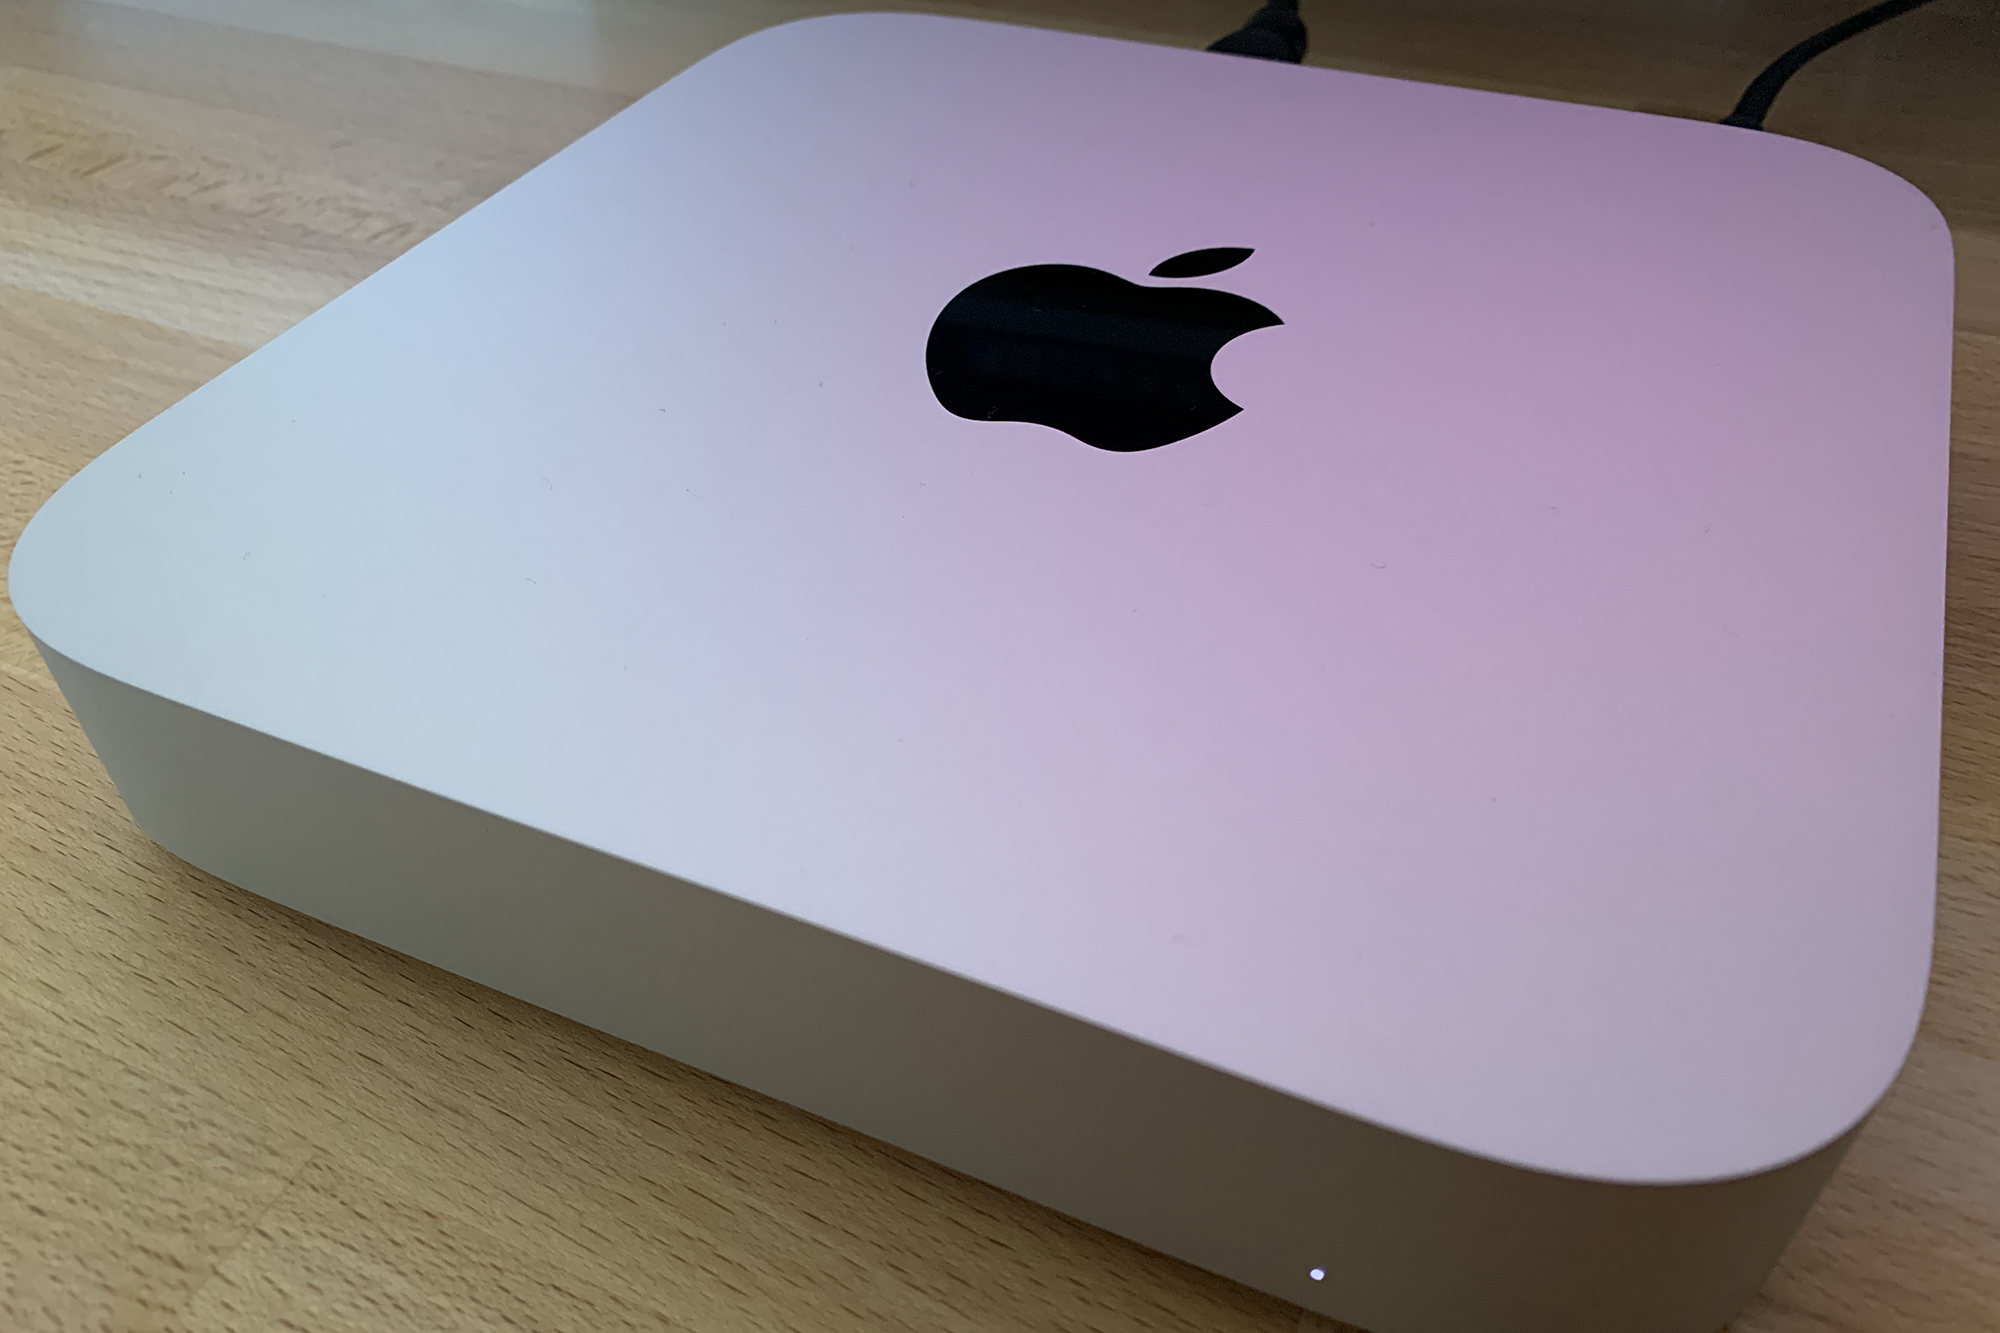 The Mac Mini M1 sitting on a desk.